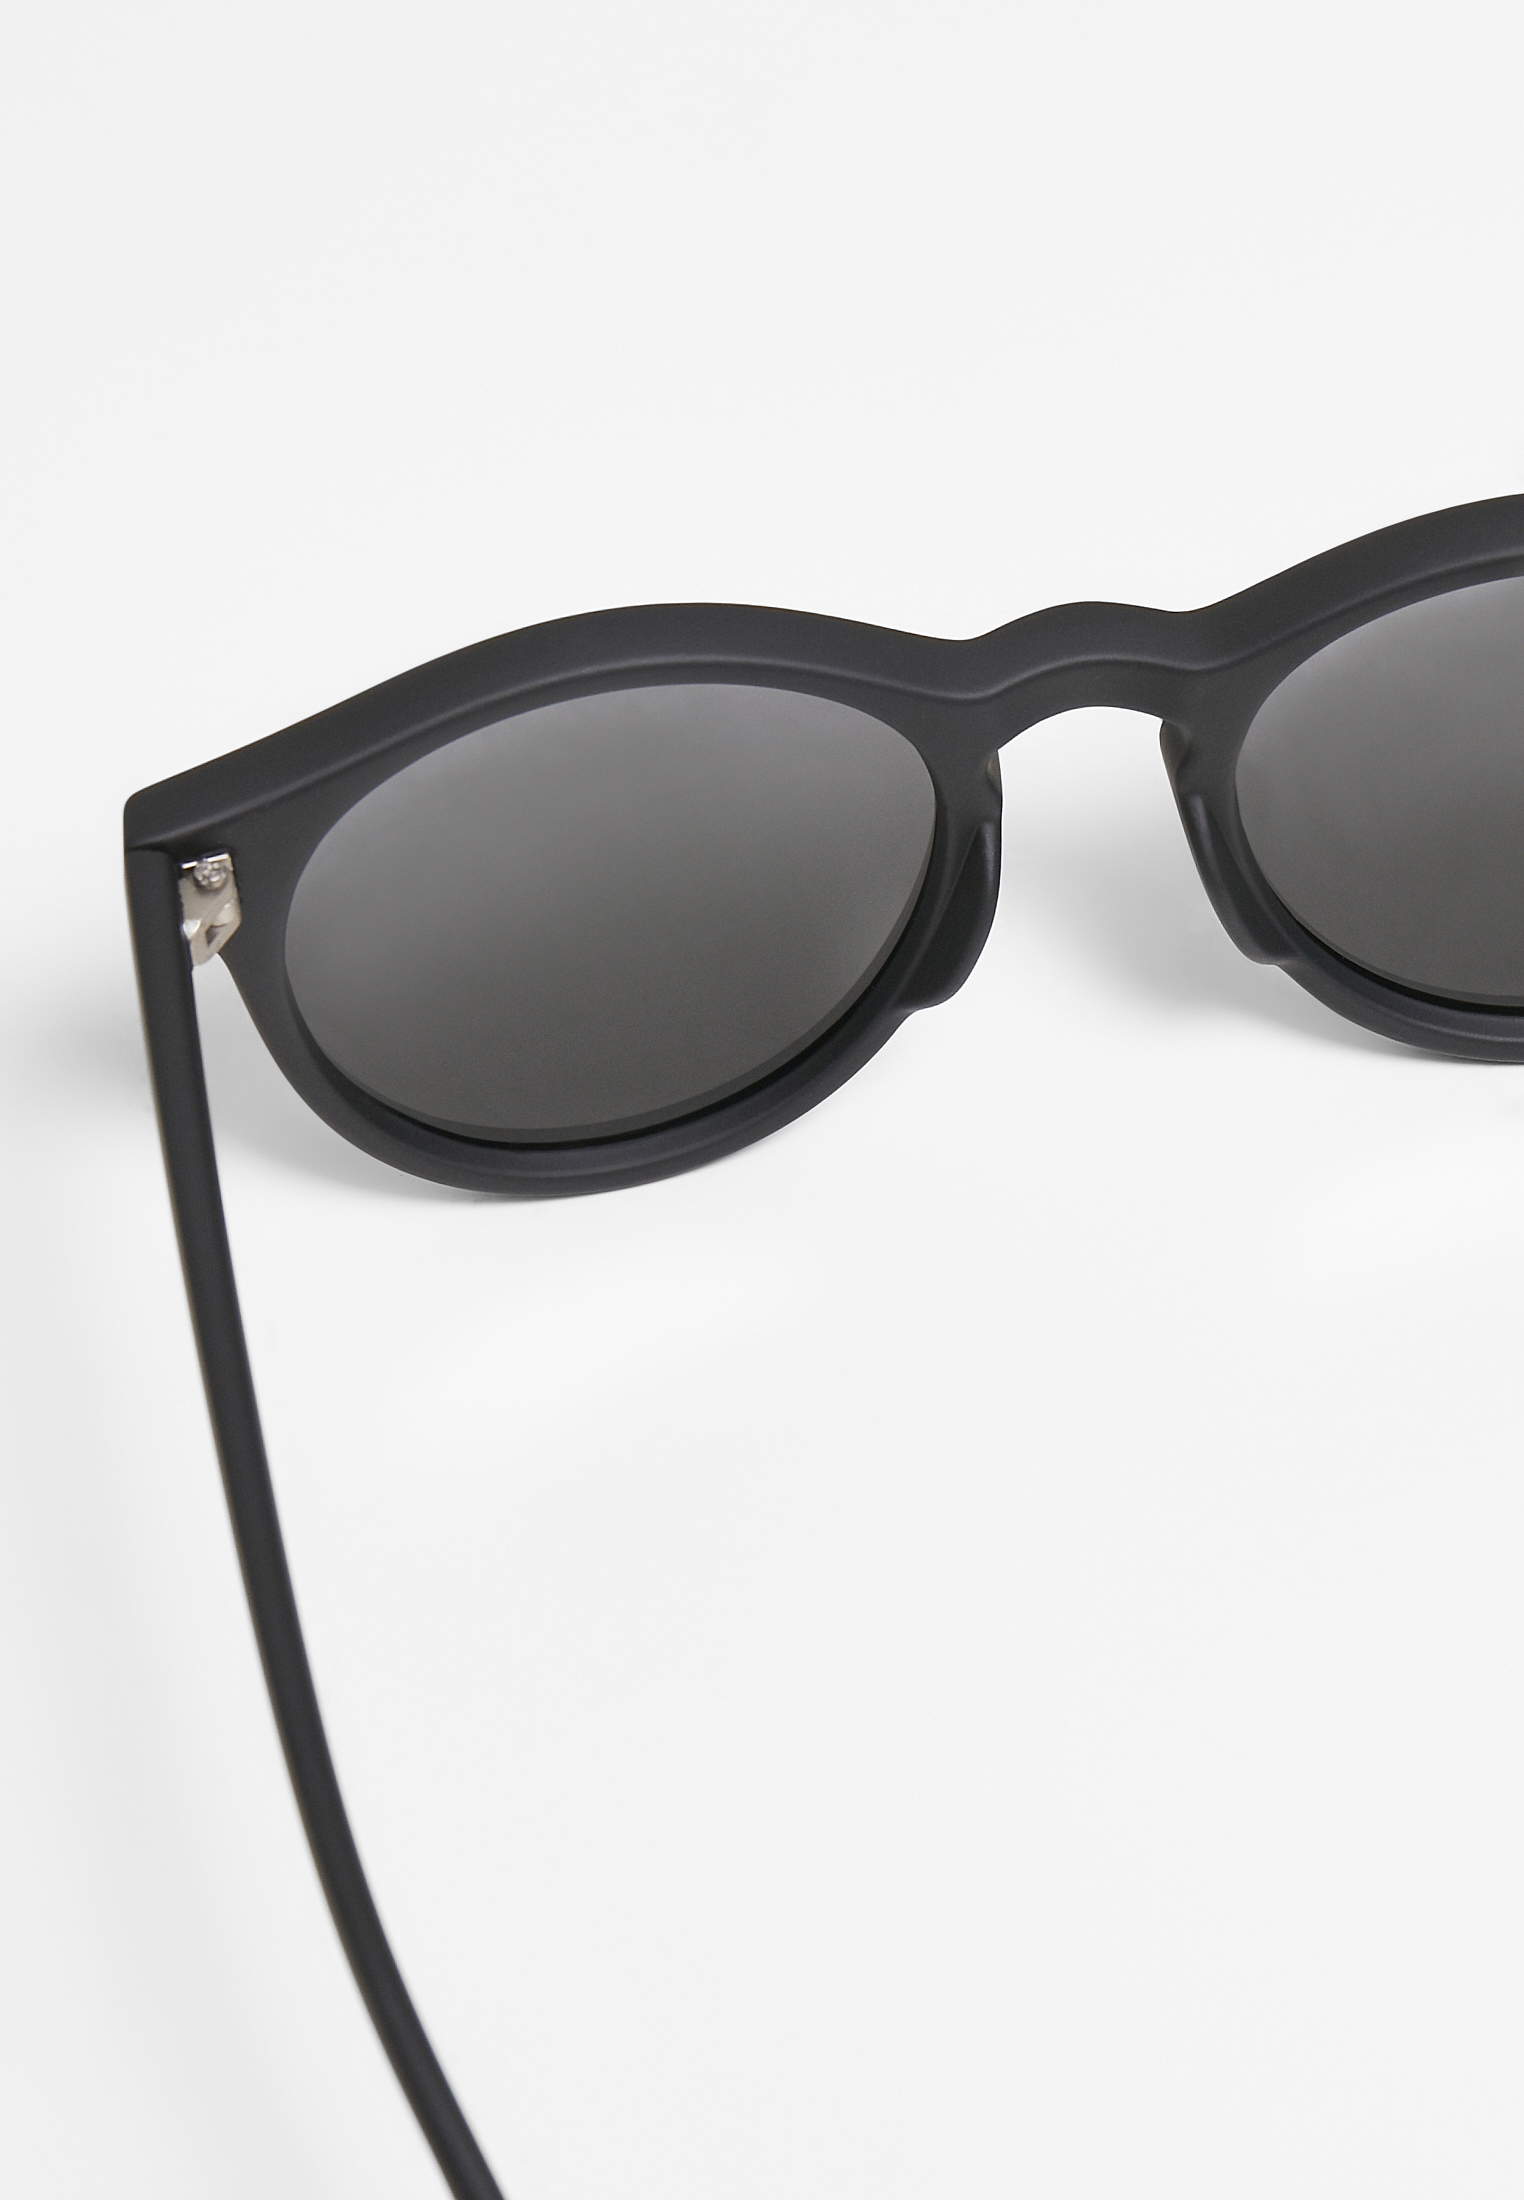 Sonnenbrillen Sunglasses Sunrise UC in Farbe black/grey